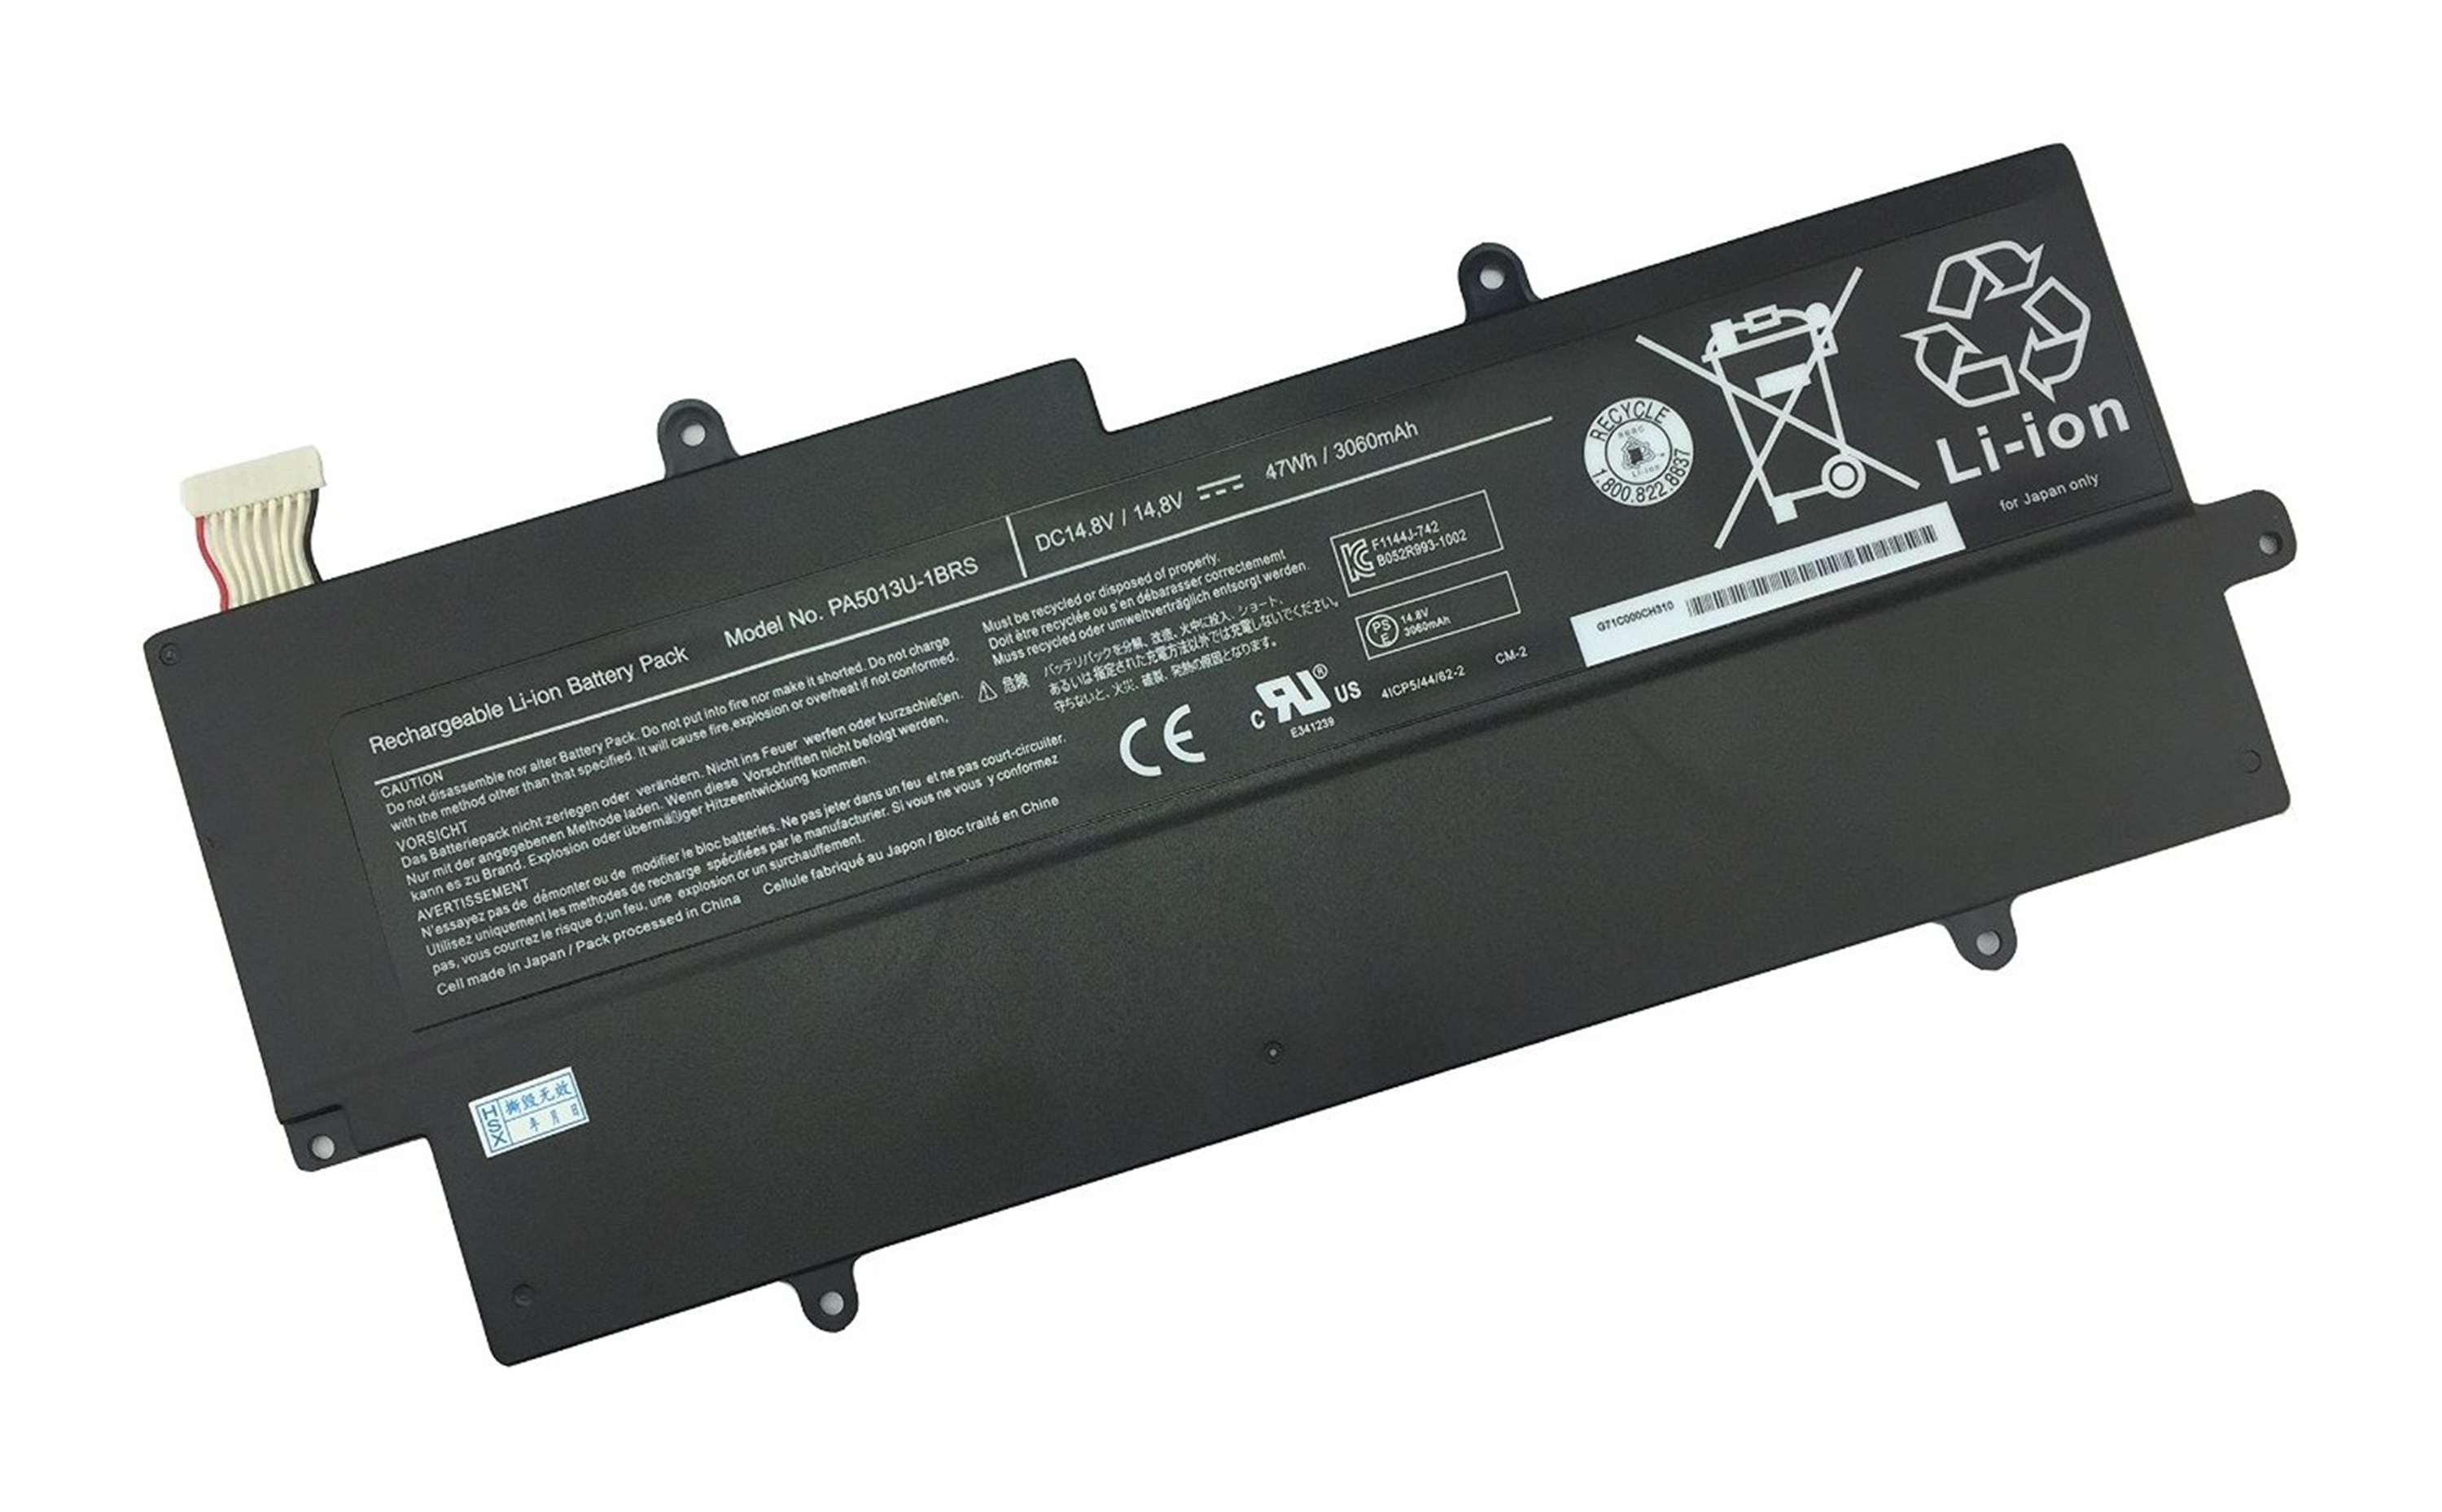 PA5013U-1BRS rechargeable lithium ion Notebook battery Laptop battery Portege Z830 Z835 Z930 Z935 14.8V 3060MAH 47WH